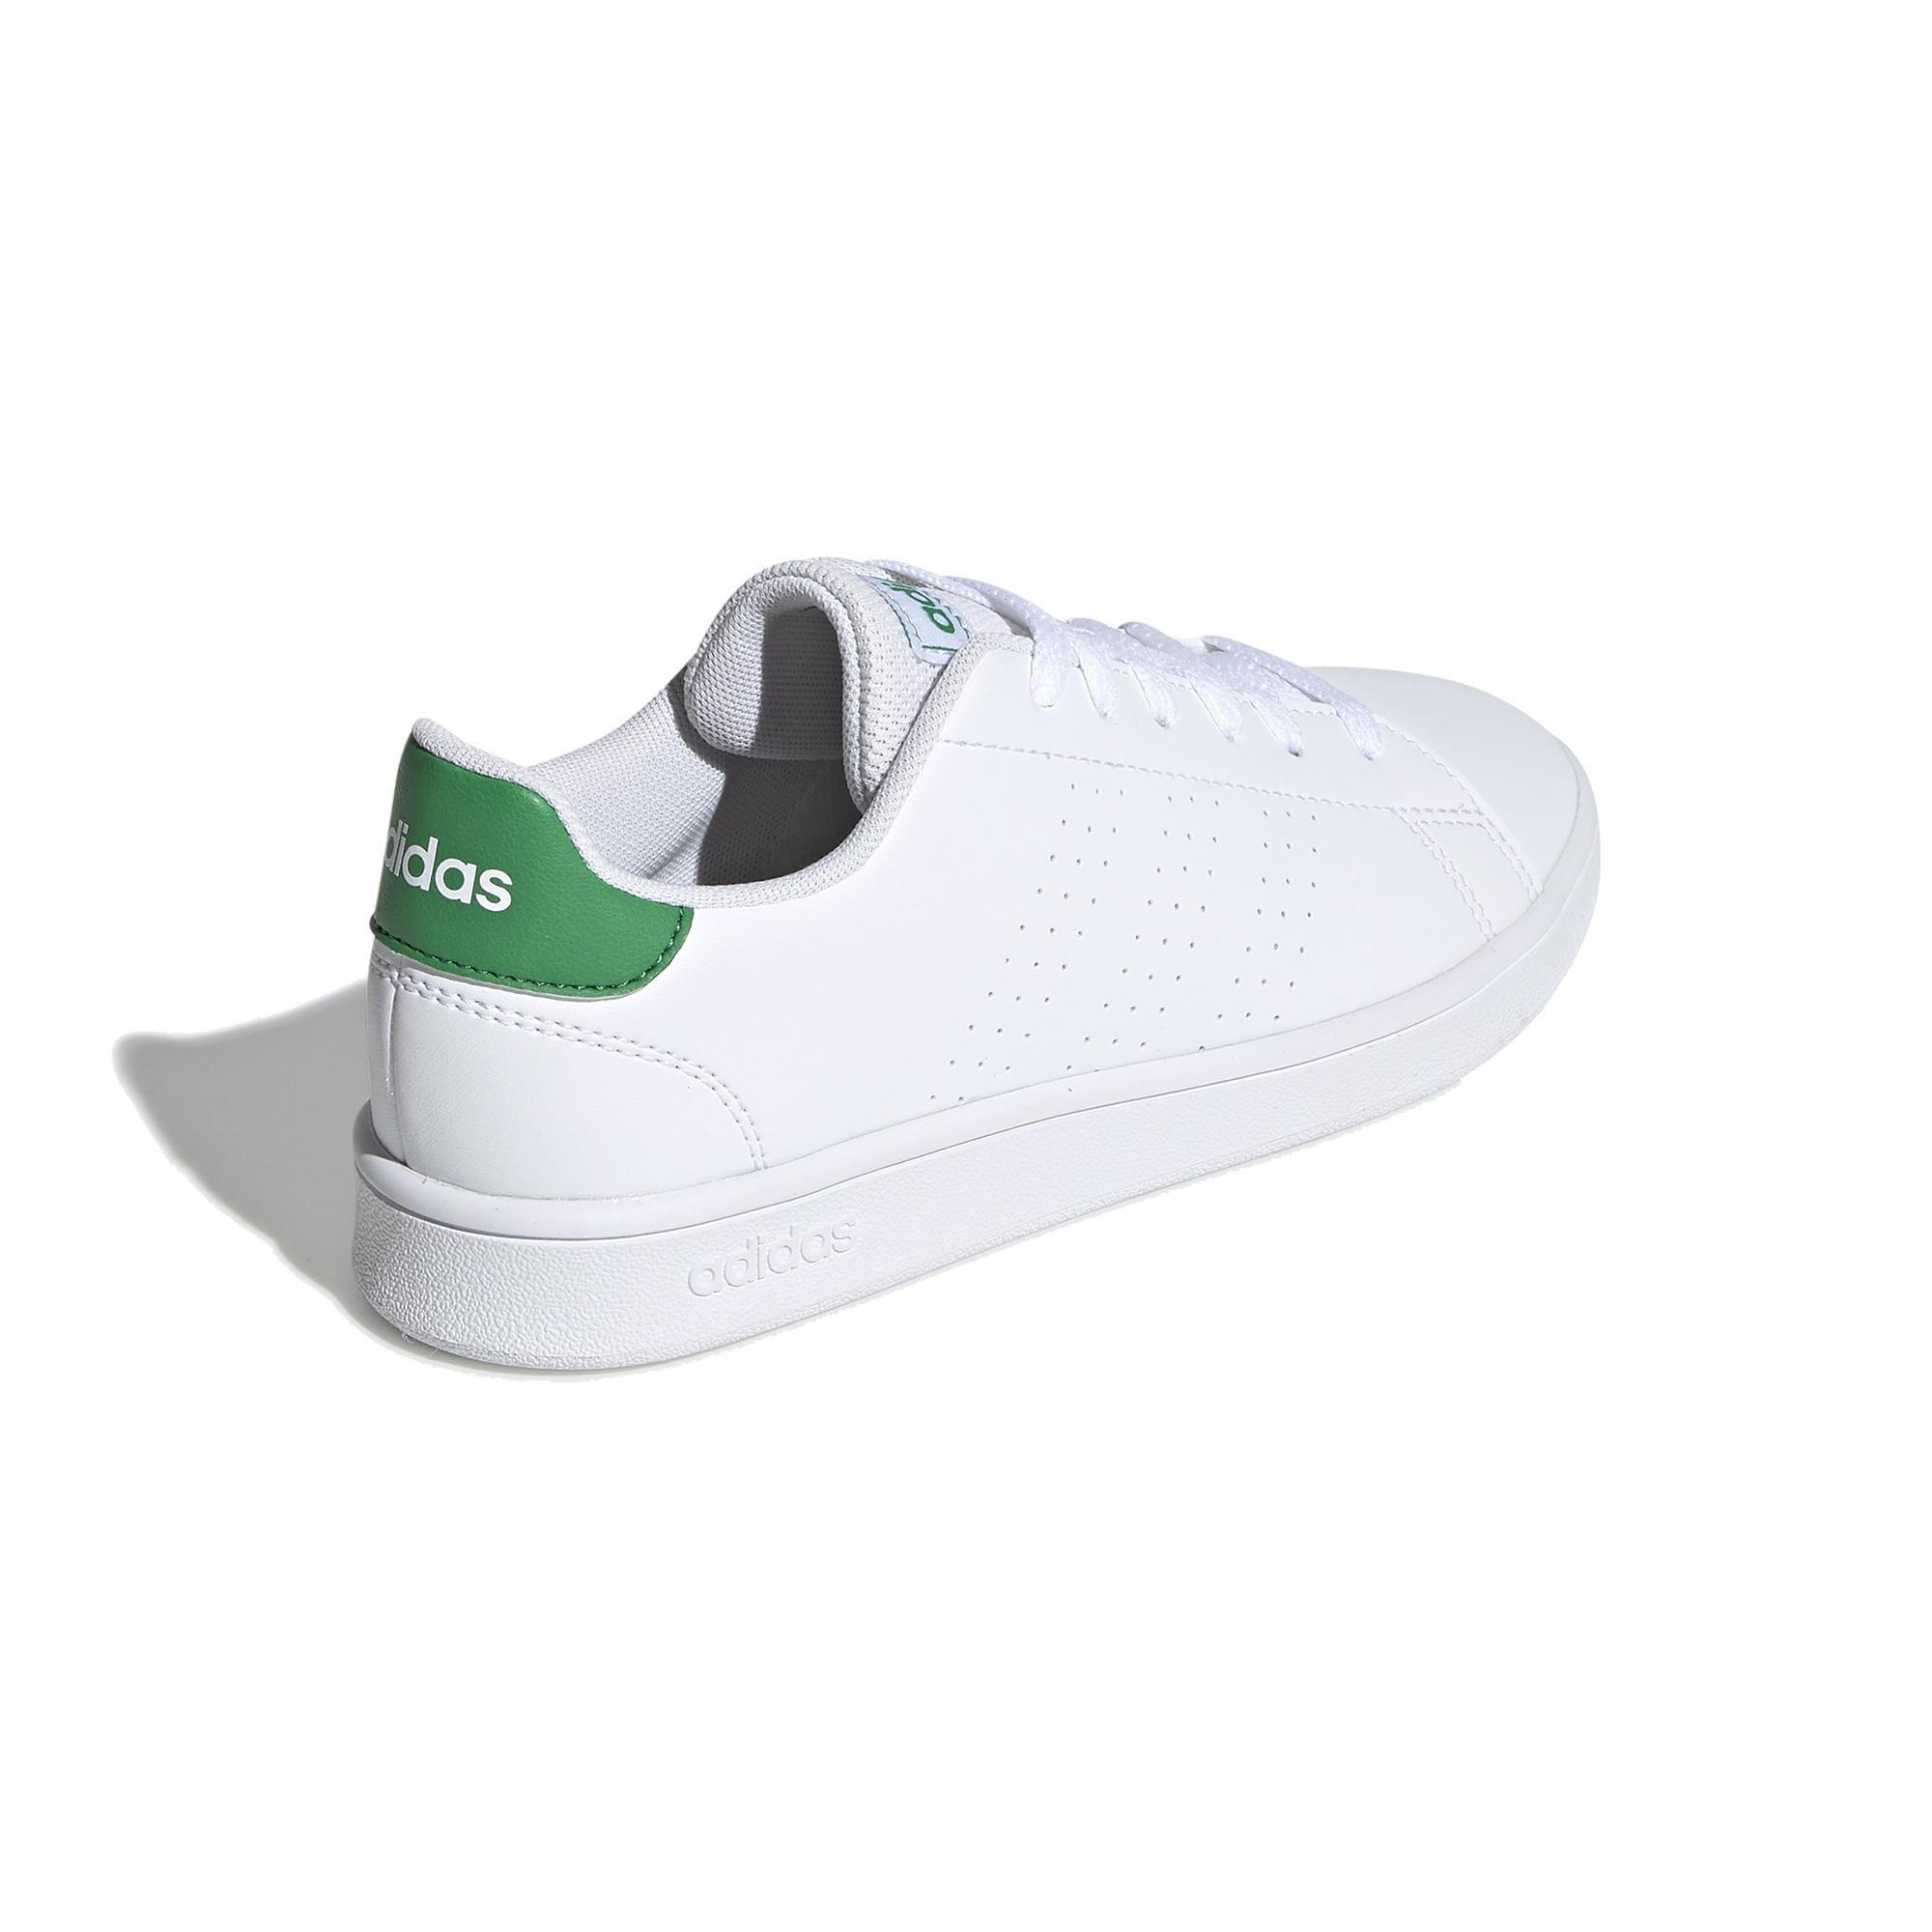 Sessizce soğuk Sandalet zapatillas de tenis niños neo advantage clean blanco  verde adidas - bilsanatolye.com